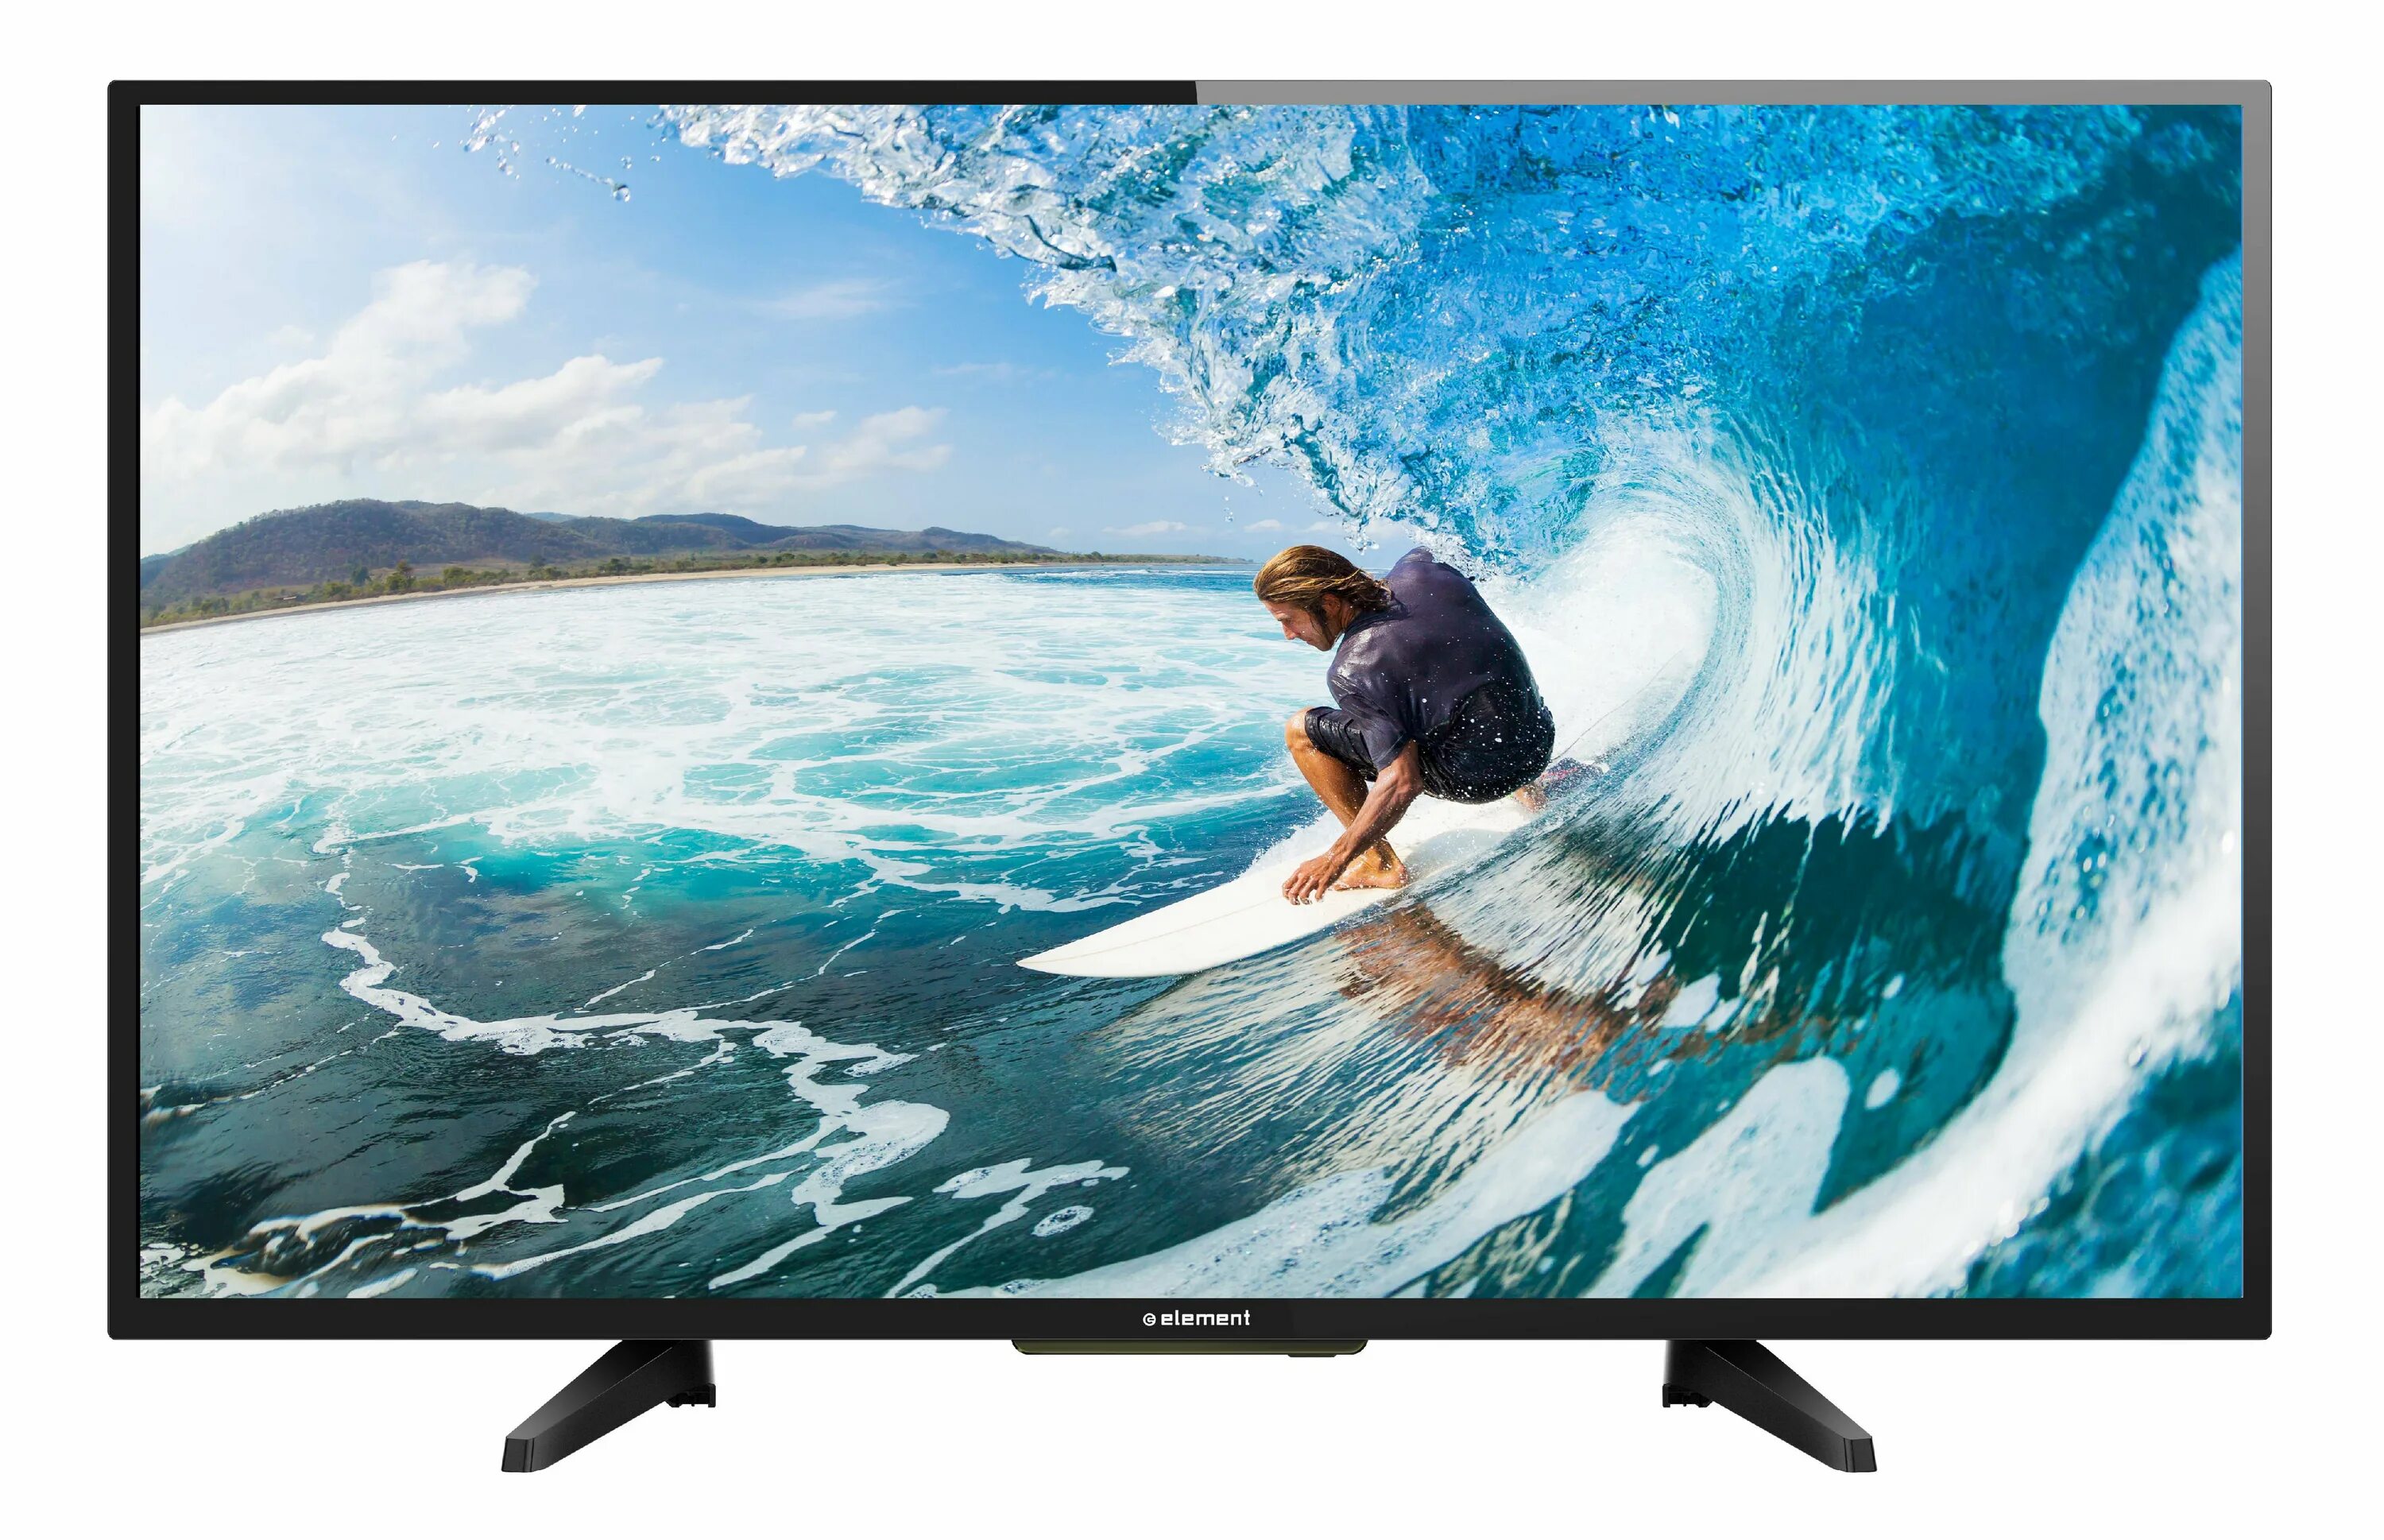 Телевизор vivo. Led TV 3216. Samsung led 40 Smart TV 2013. Монитор element.